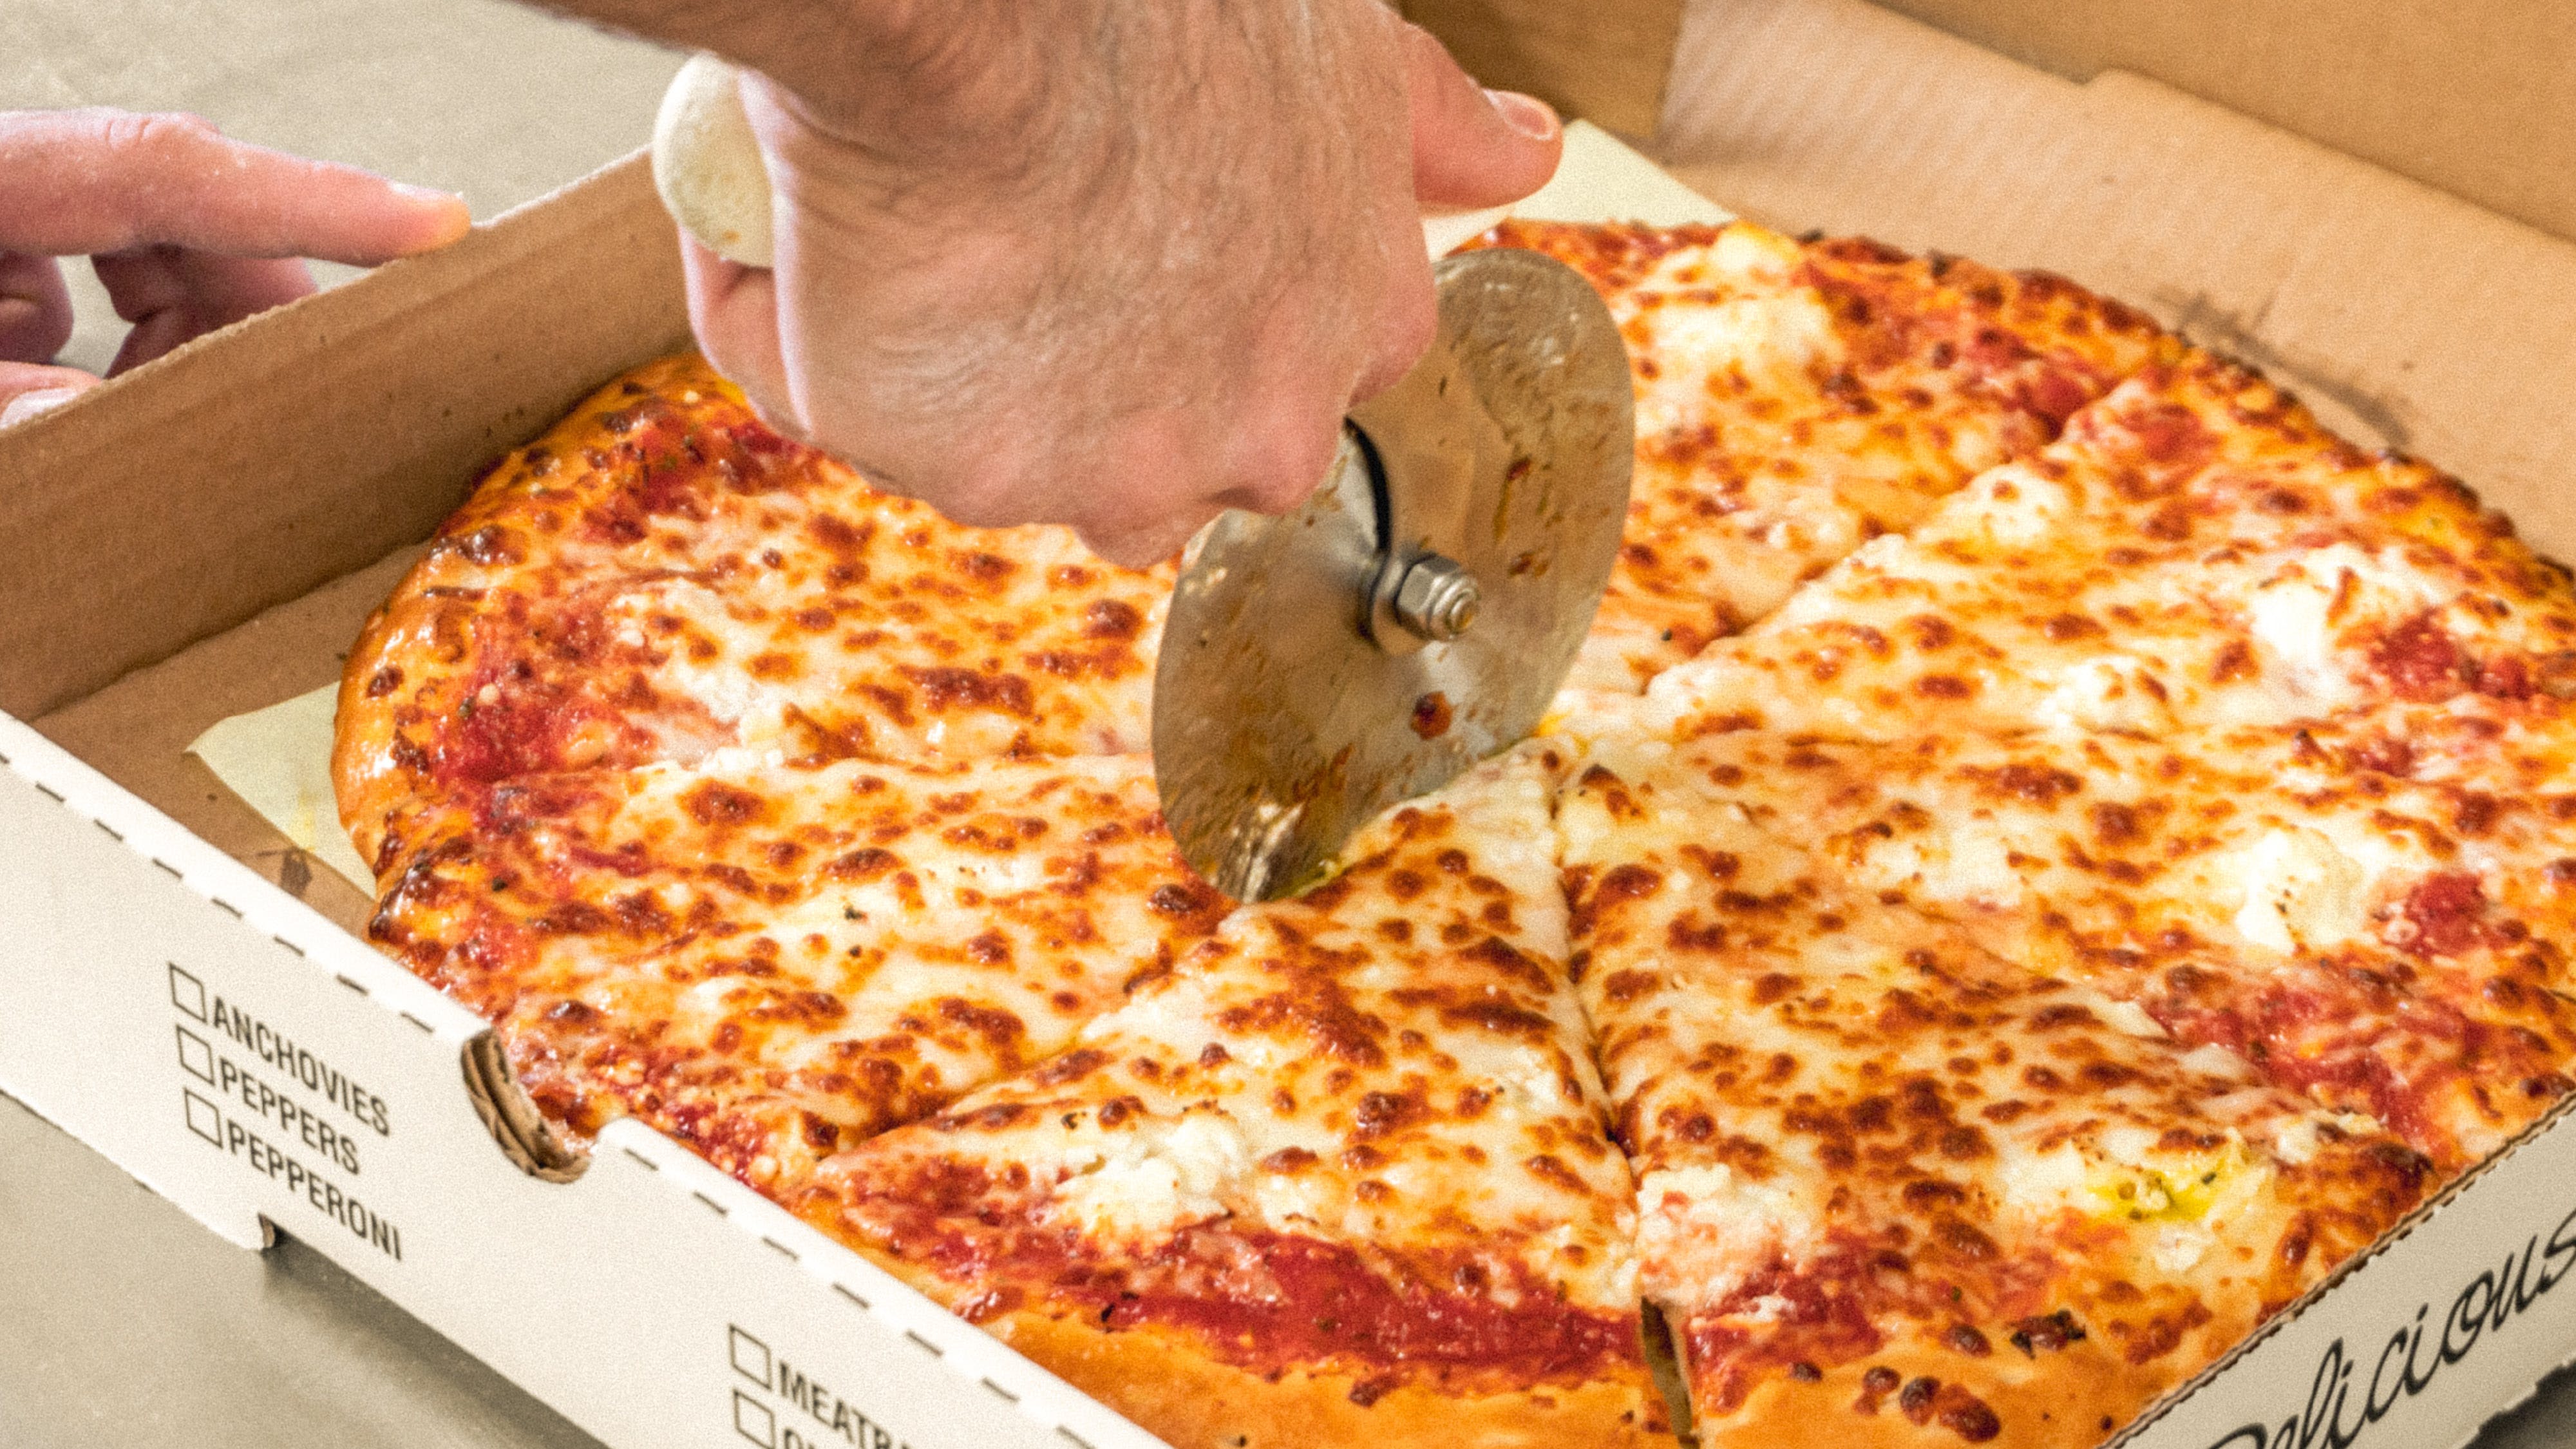 Eldrion's Pizza hero